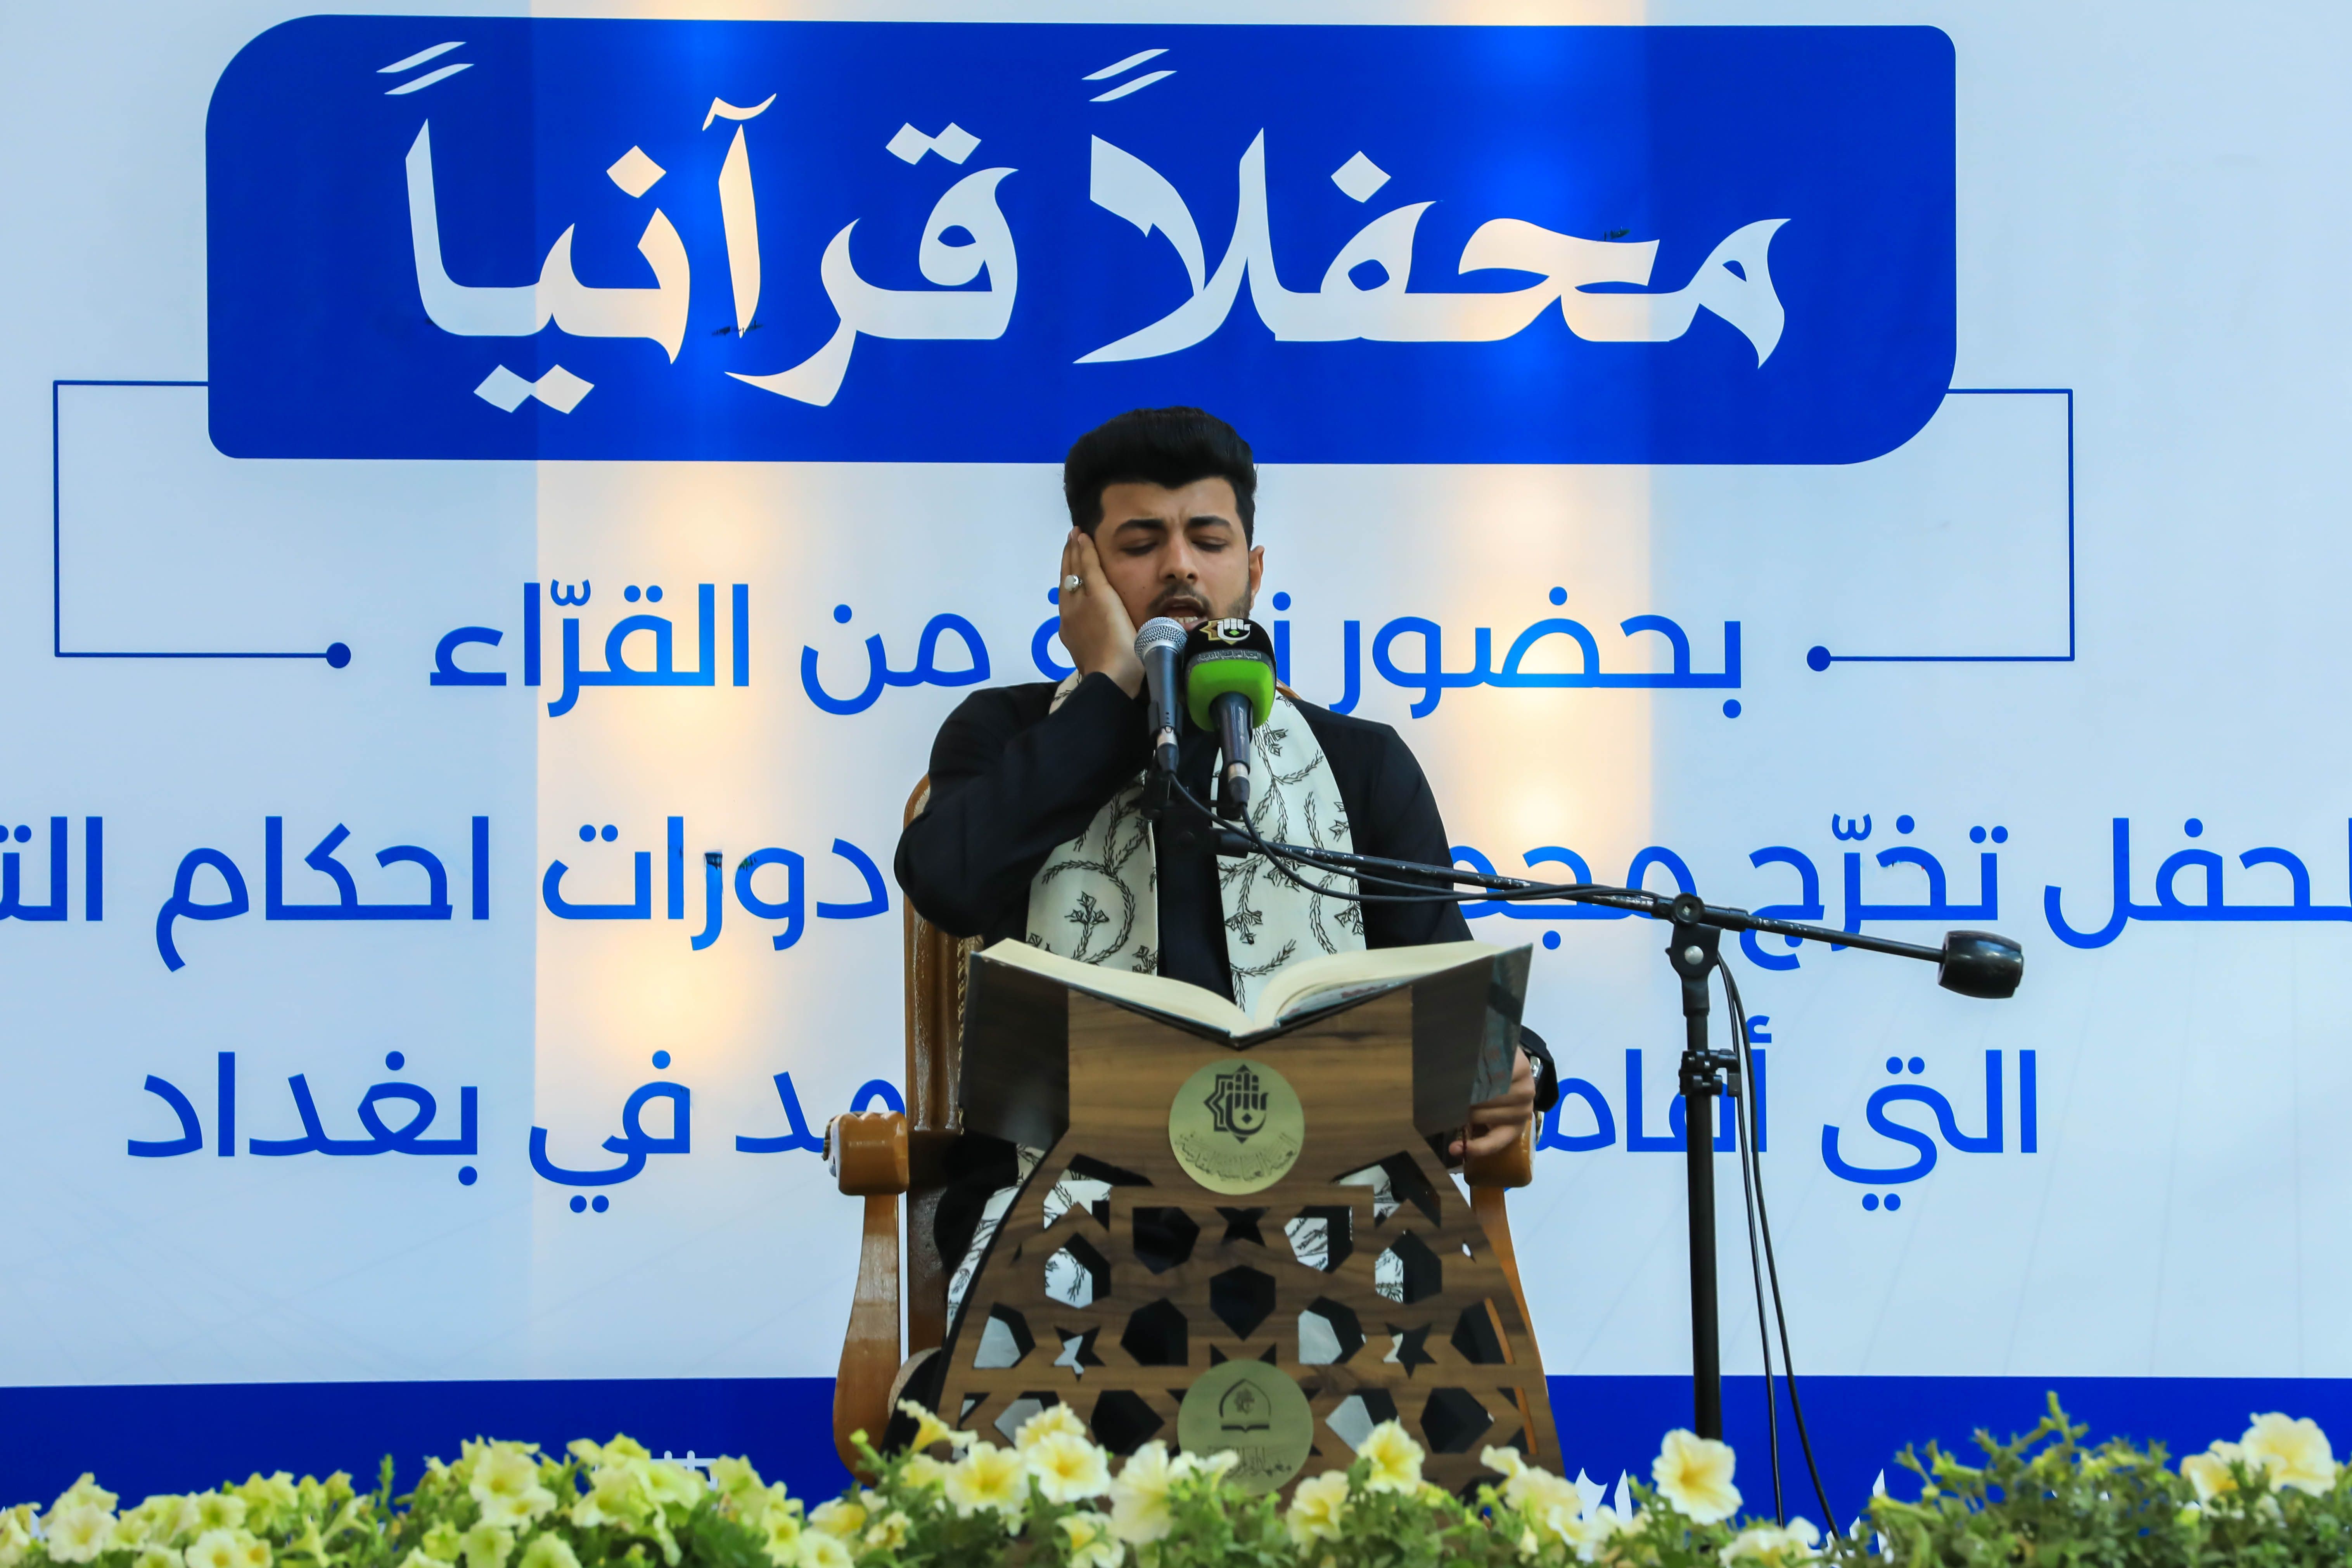 الصحن العباسي المطهر يحتضن محفلاً قرآنيًا احتفاءً بتخرج  ٤٠٠ طالب من طلبة الدورات القرآنية في بغداد